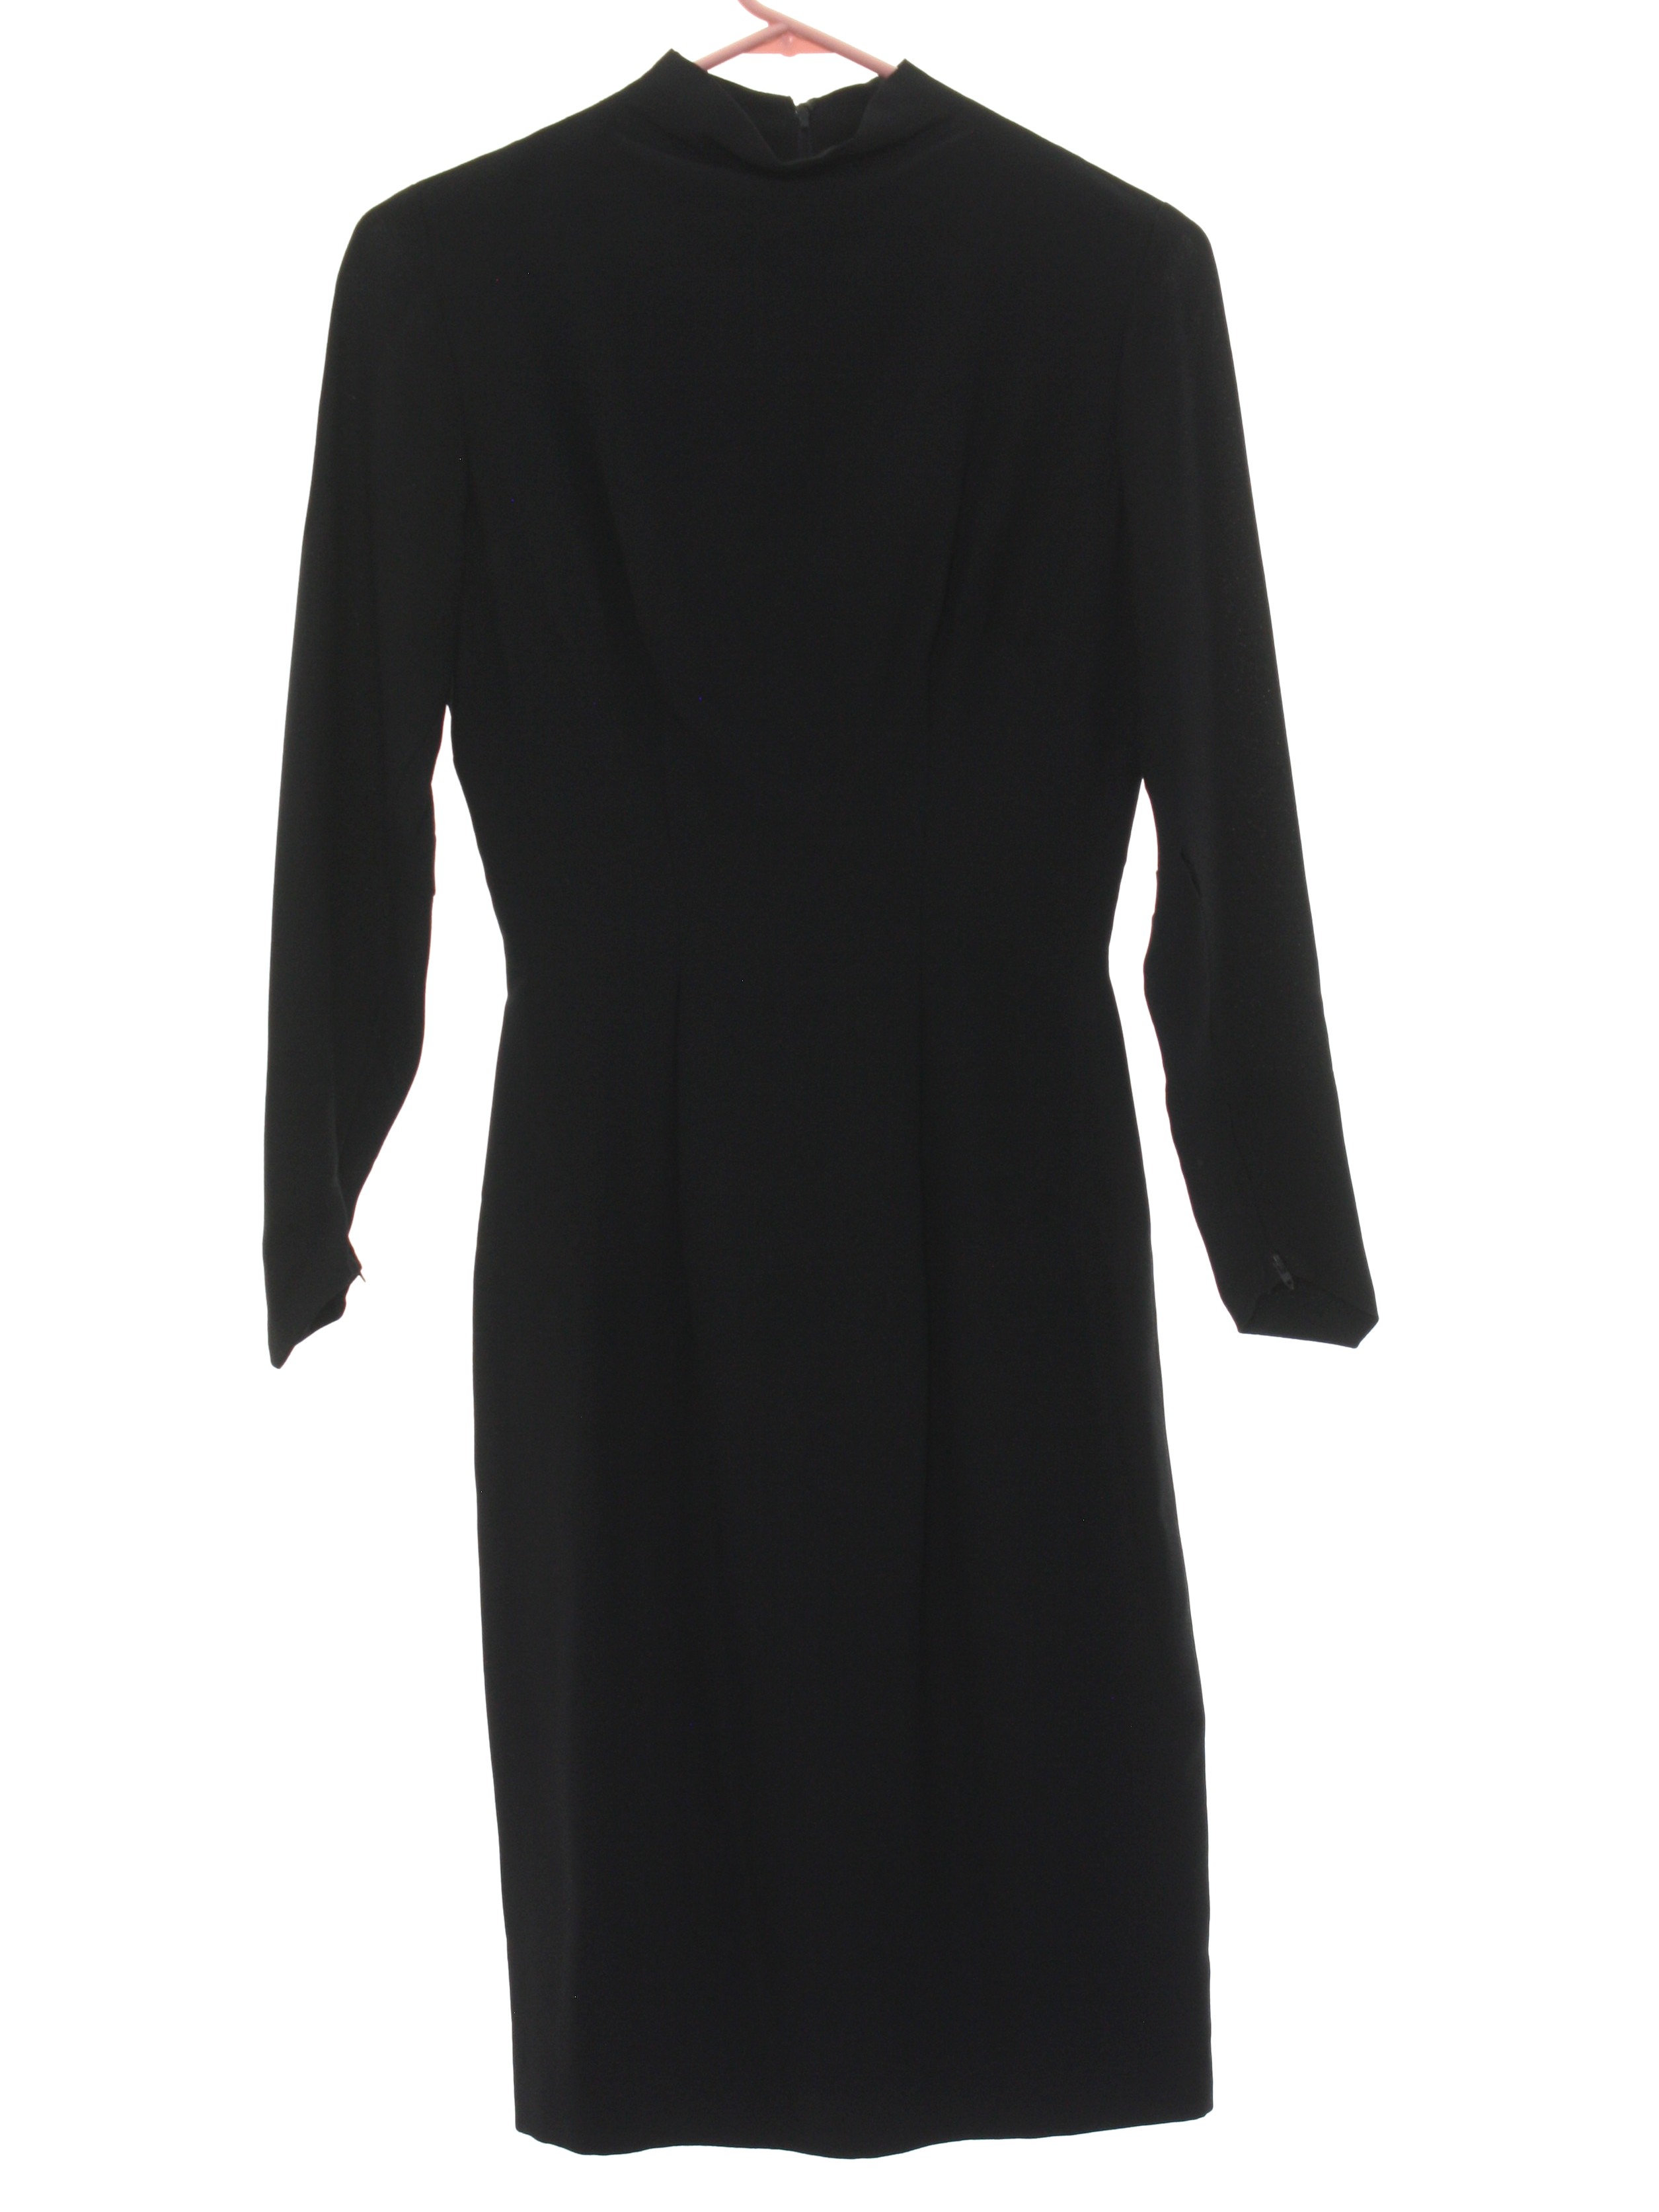 Retro 1960's Dress (S. Eisenberg, California, designer) : Early 60s -S ...